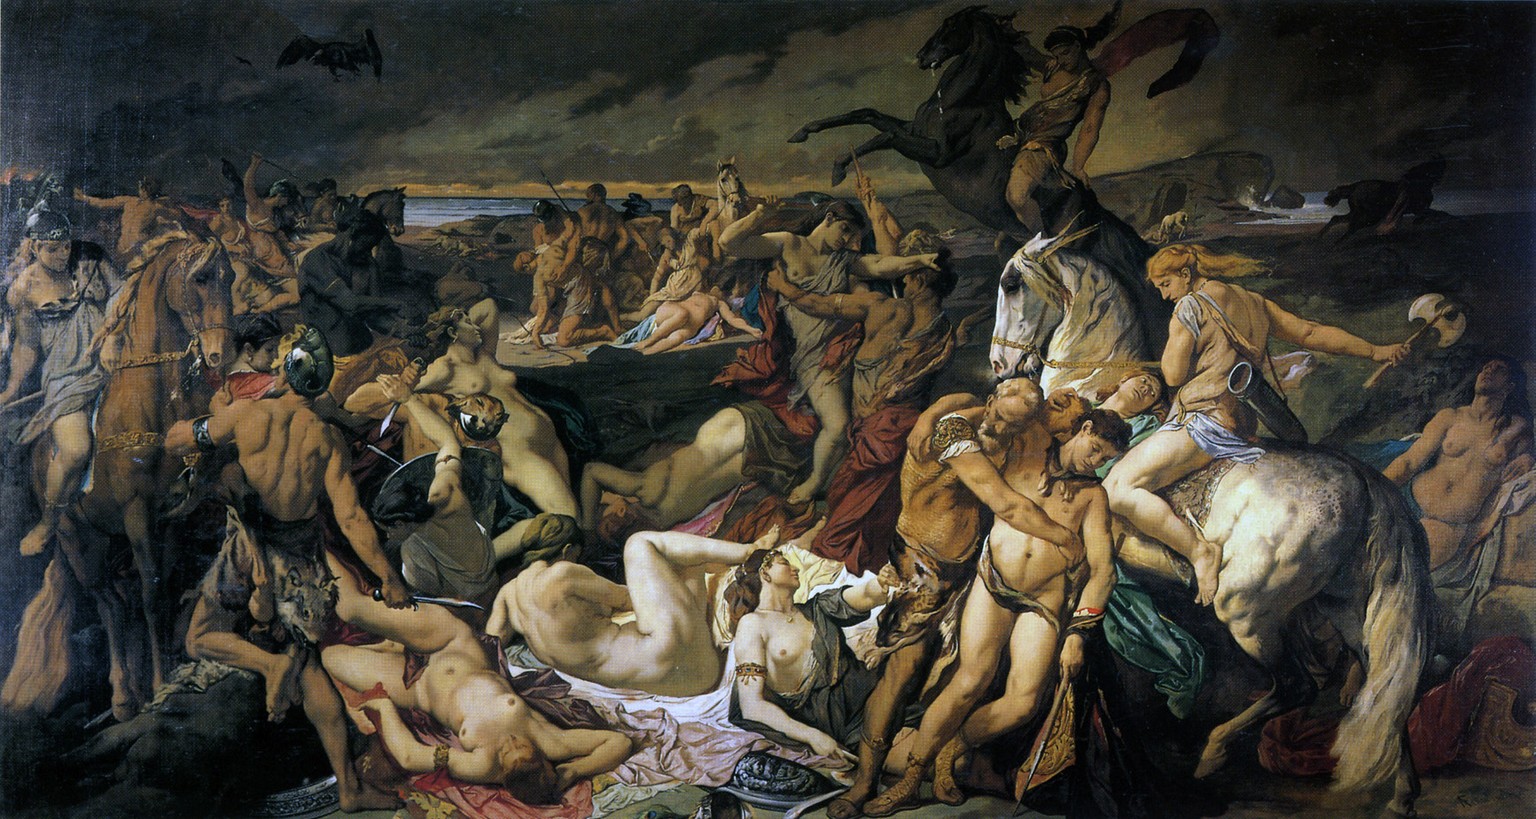 Die Amazonenschlacht von Anselm Feuerbach, 1873, die eher an eine Orgie als an eine Schlacht erinnert.